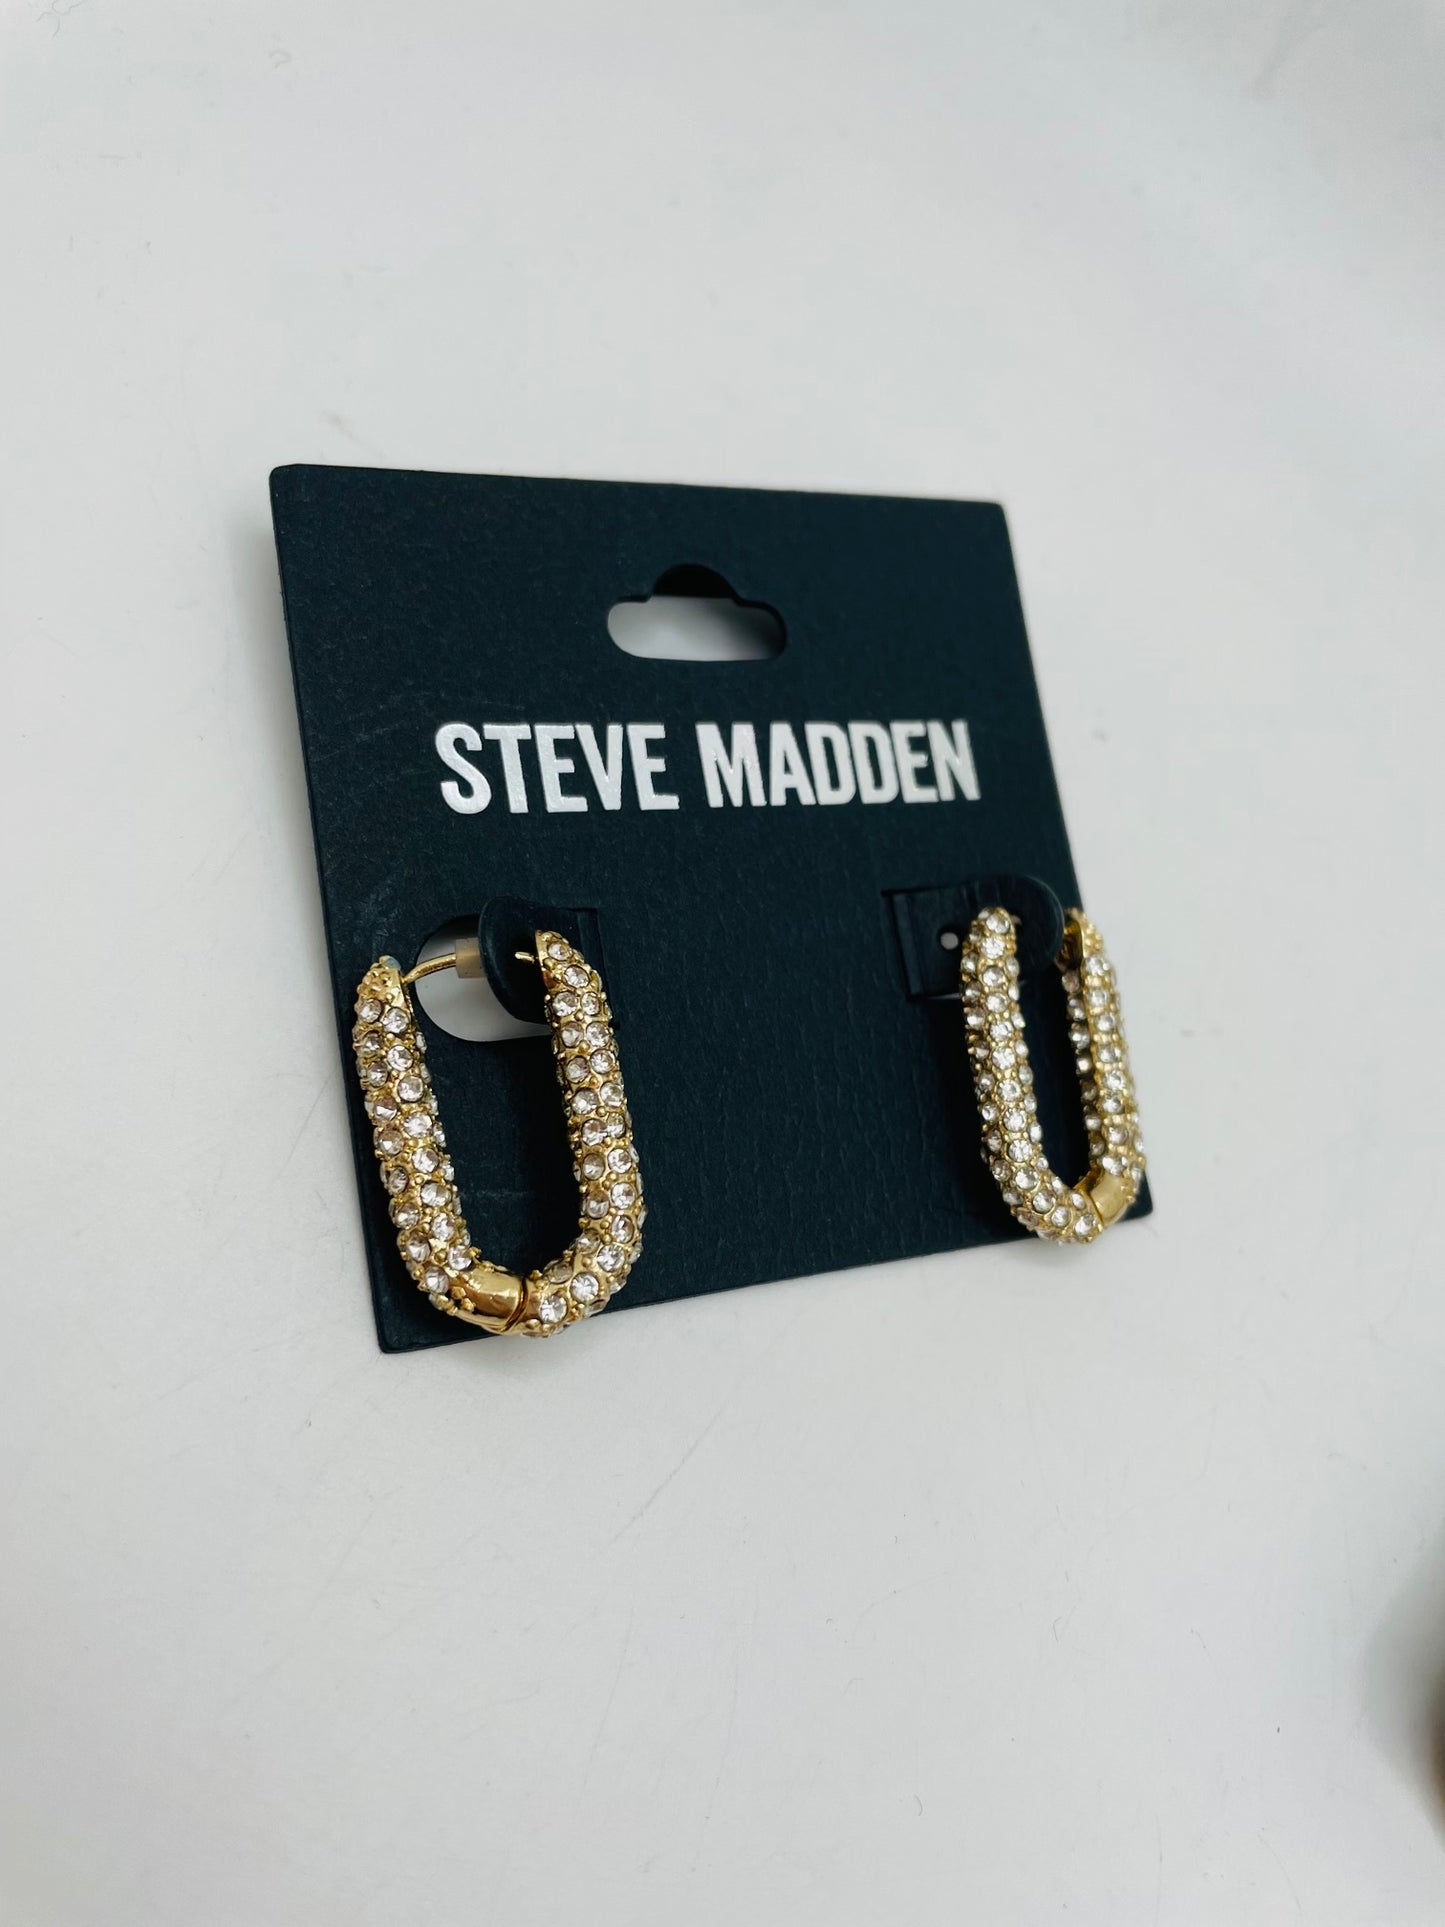 Steve Madden earring